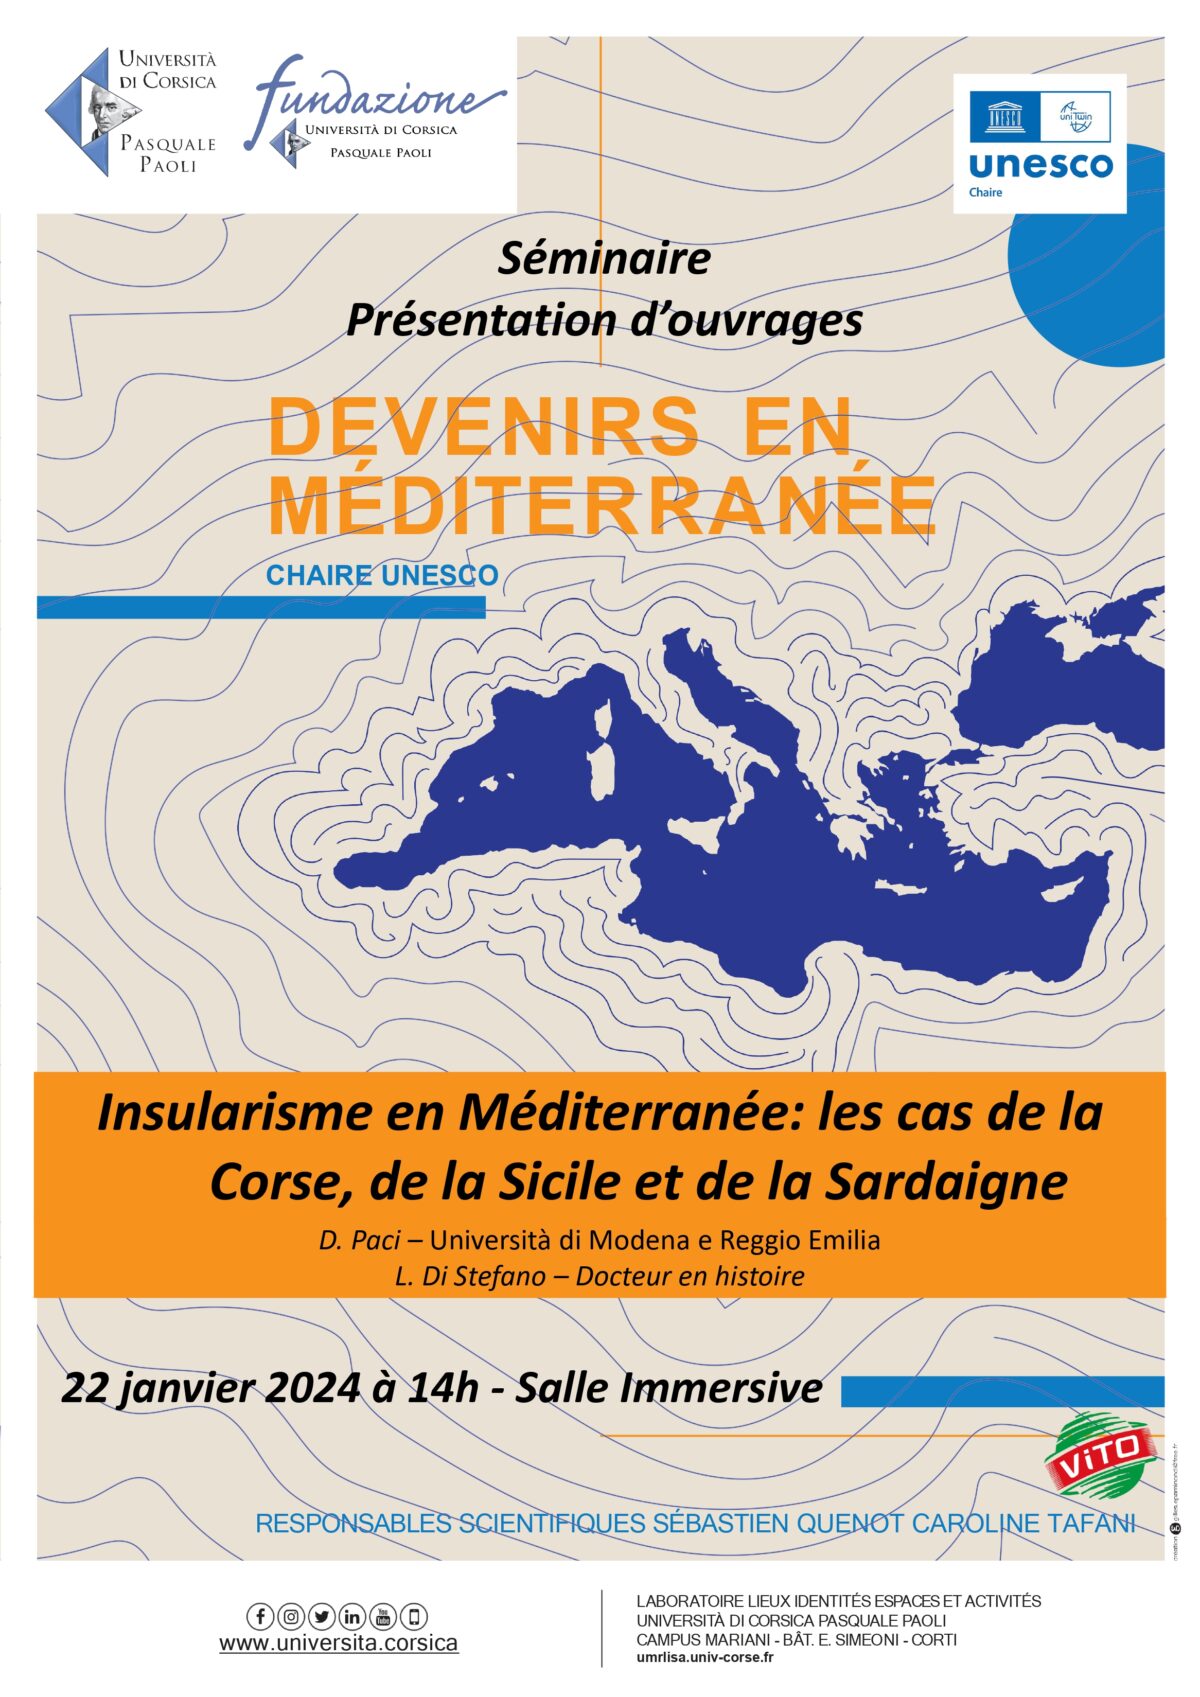 Insularisme en Méditerranée: les cas de la Corse, de la Sicile et de la Sardaigne